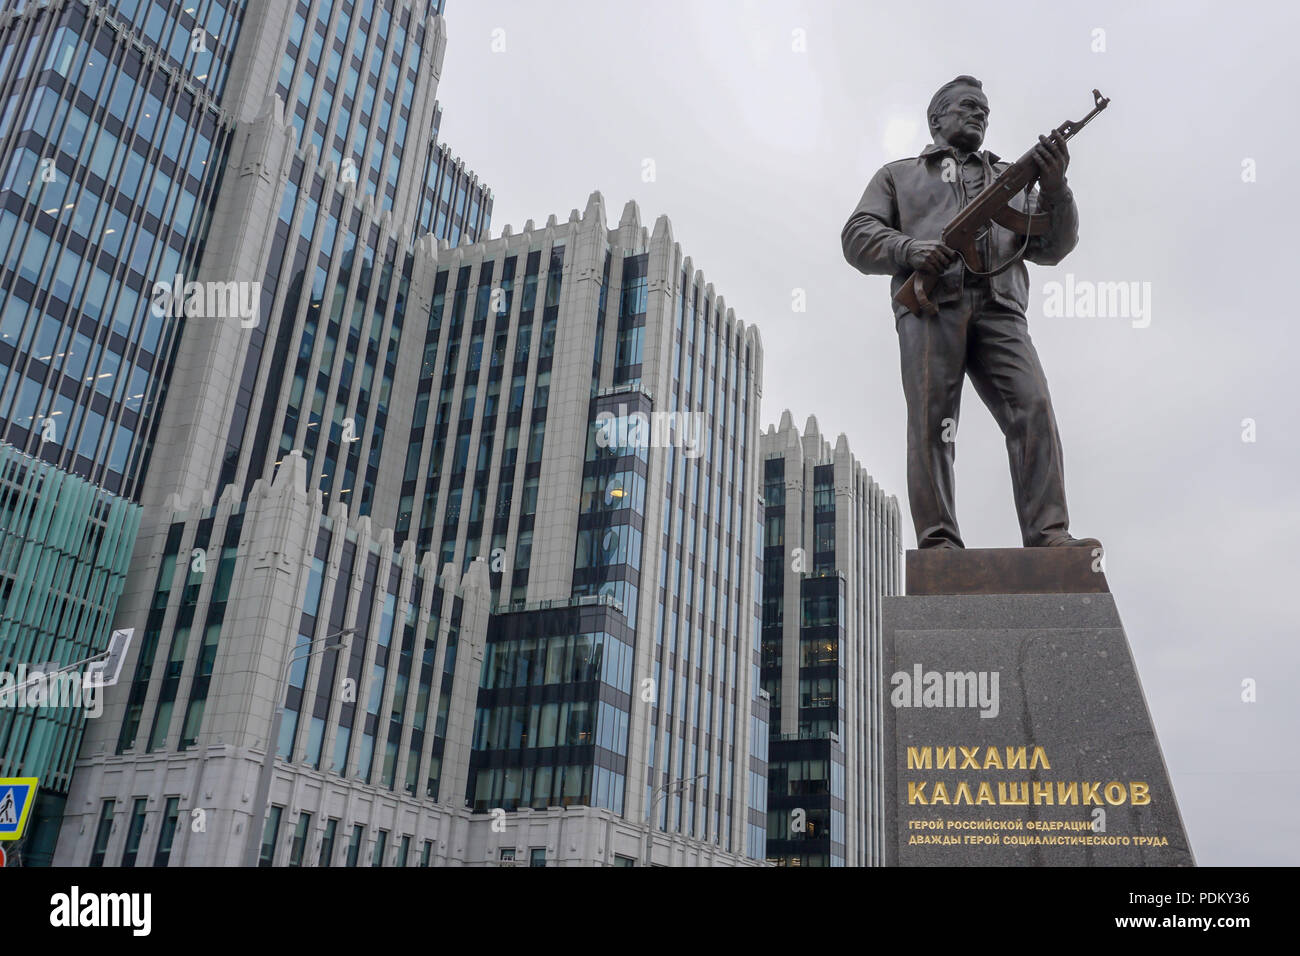 Una statua di Mikhail Kalashnikov, inventore della AK-47 fucile da assalto, nel centro di Mosca dallo scultore Salavat Shcherbakov. Foto Stock